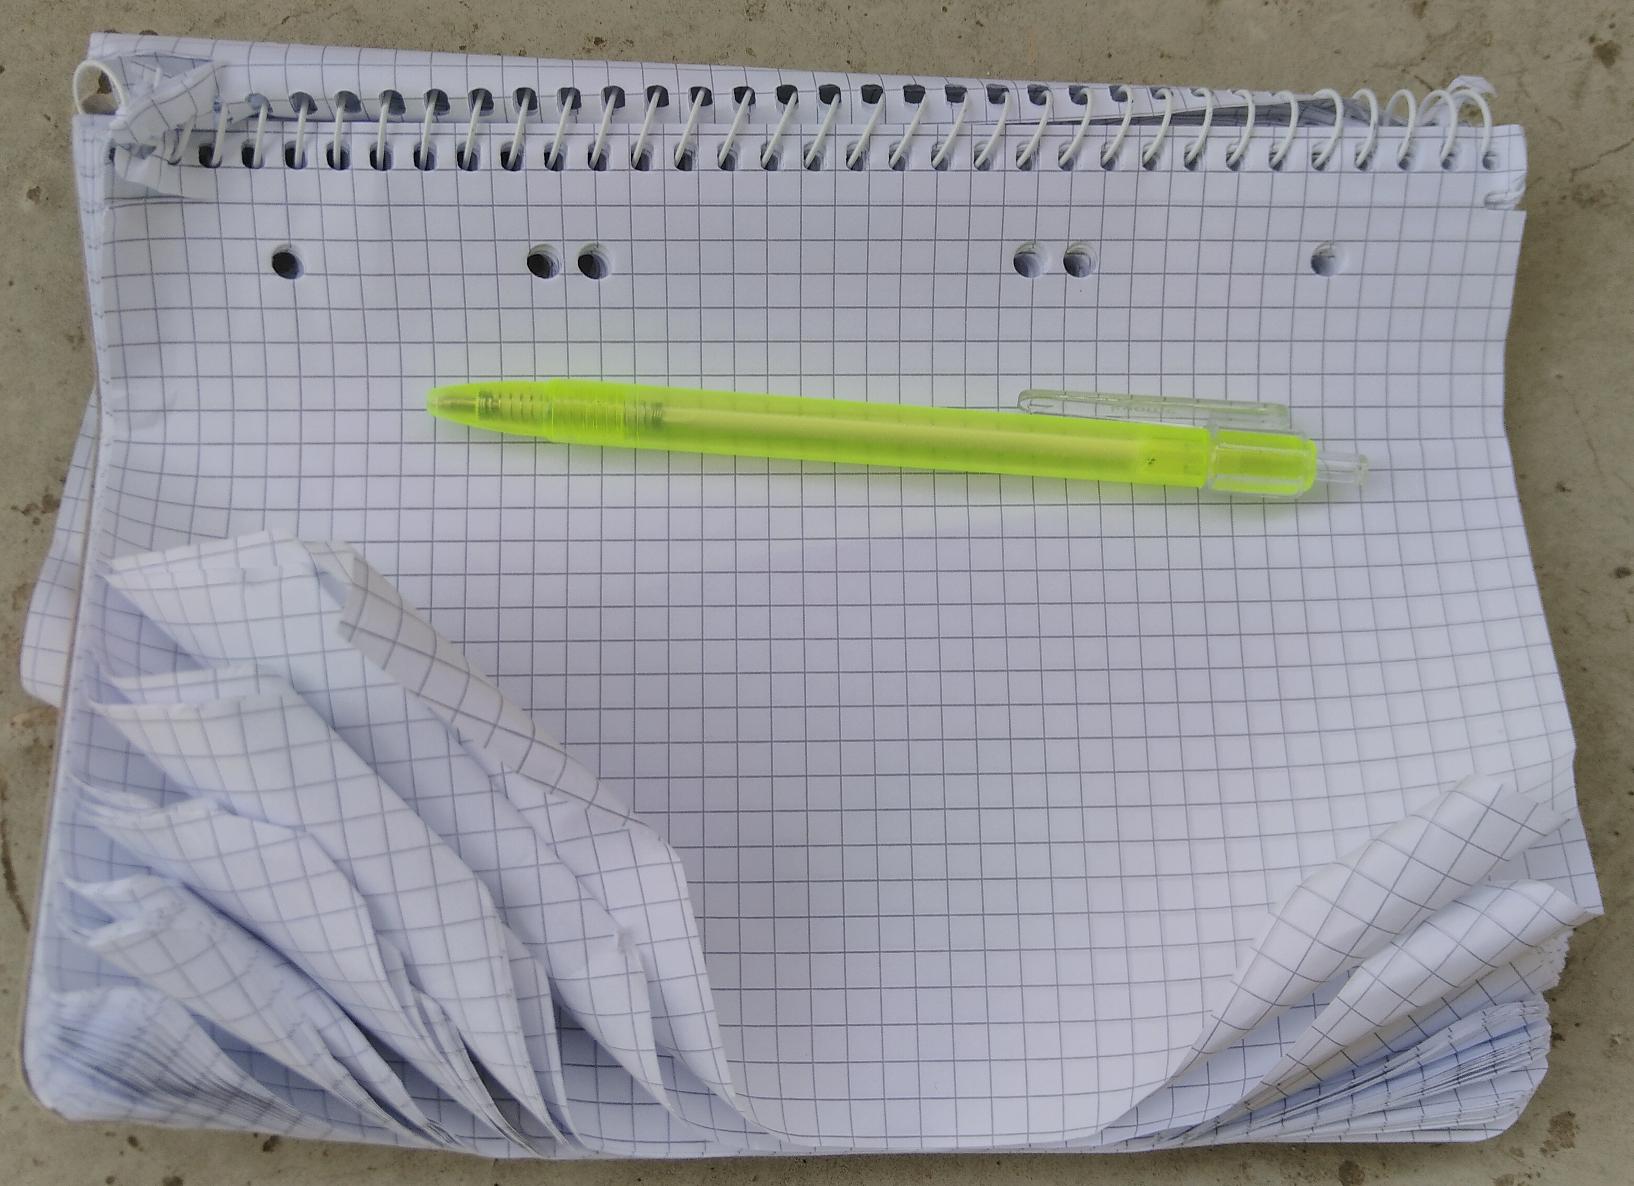 Das Bild zeigt einen verknitterten Block mit kariertem Papier sowie einen billigen Kugelschreiber aus Plastik.